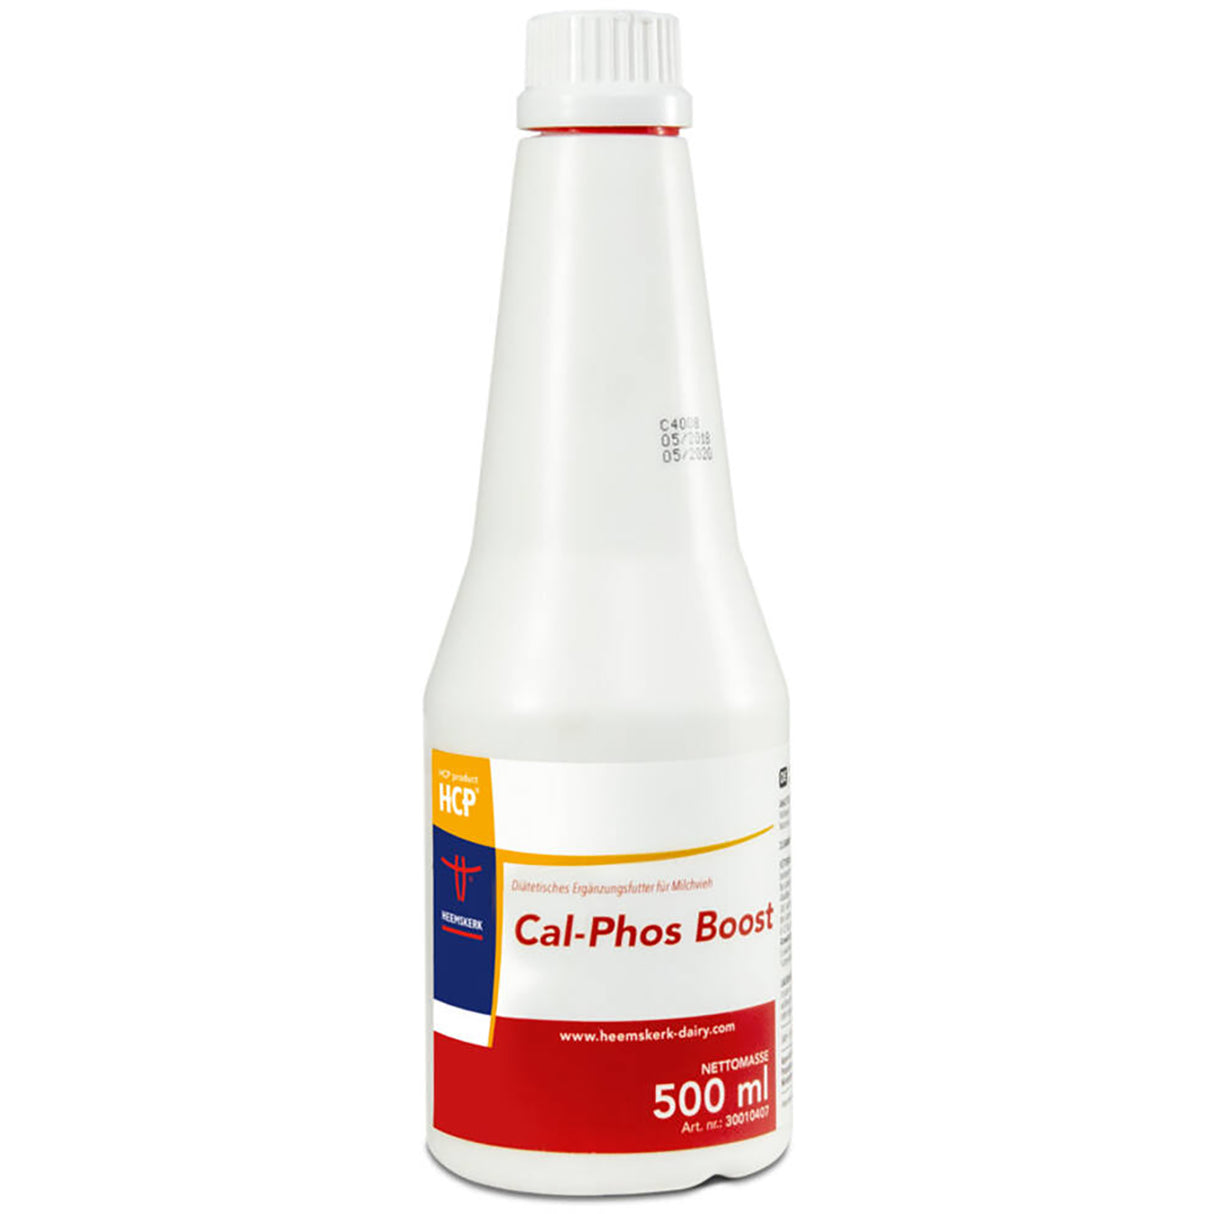 Cal-Phos Boost 500 ml